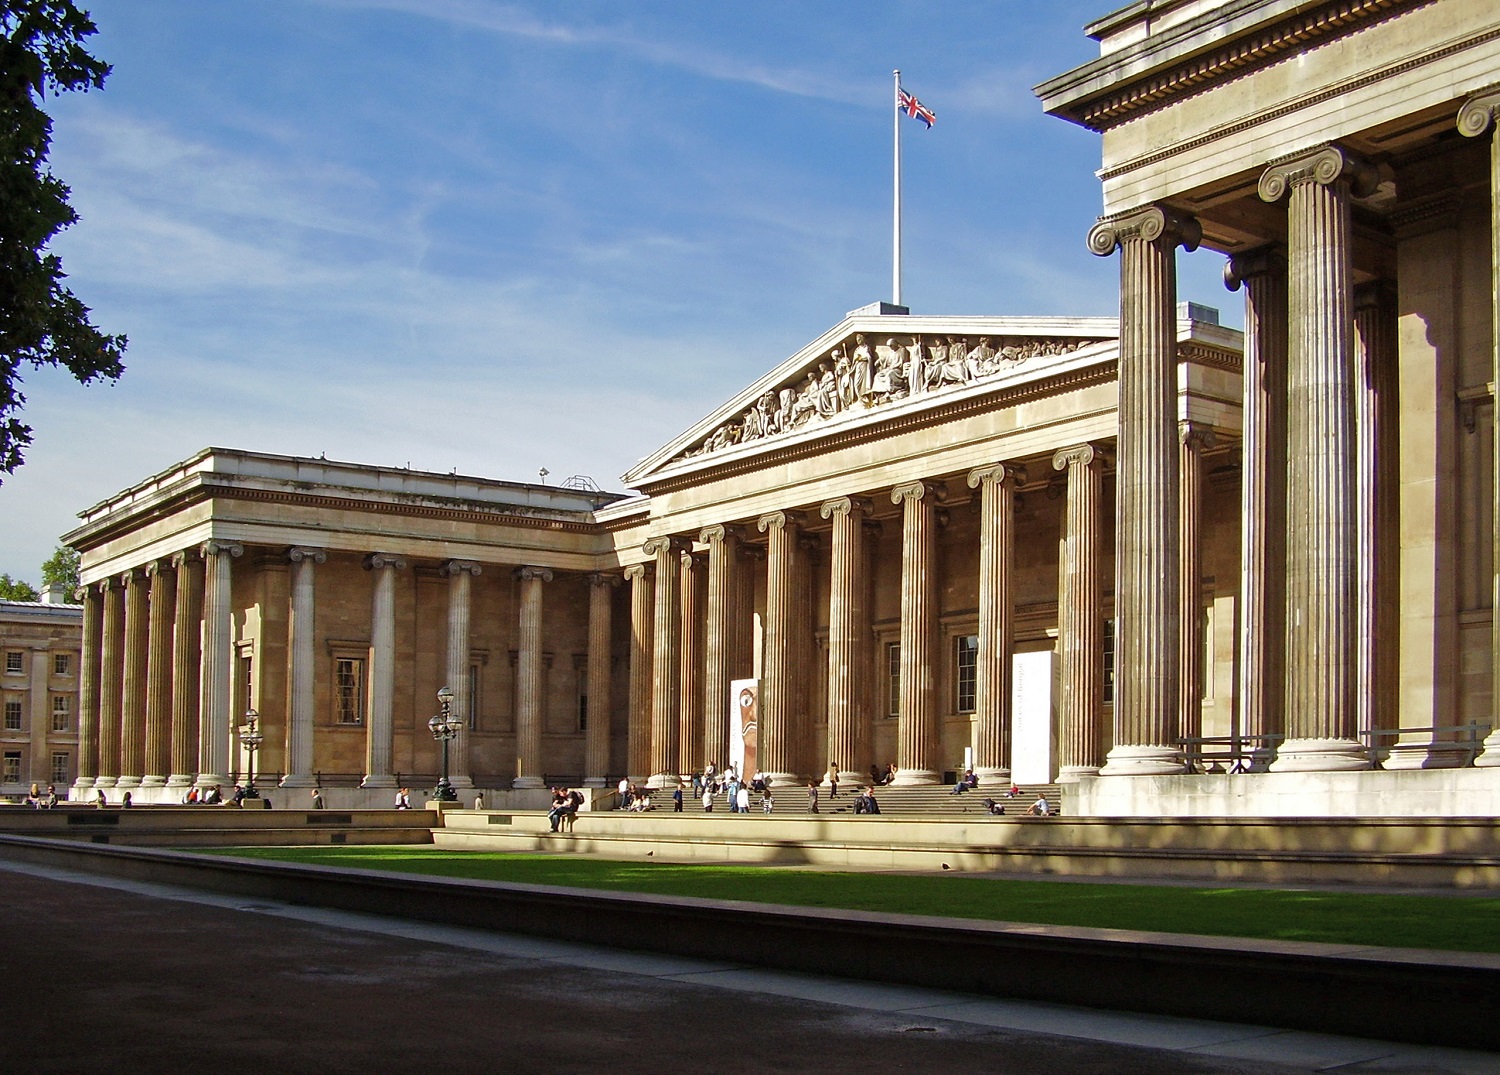 يقع المتحف البريطاني بقلب العاصمة لندن، على بعد عدة شوارع من قصر باكنجهام الشهير